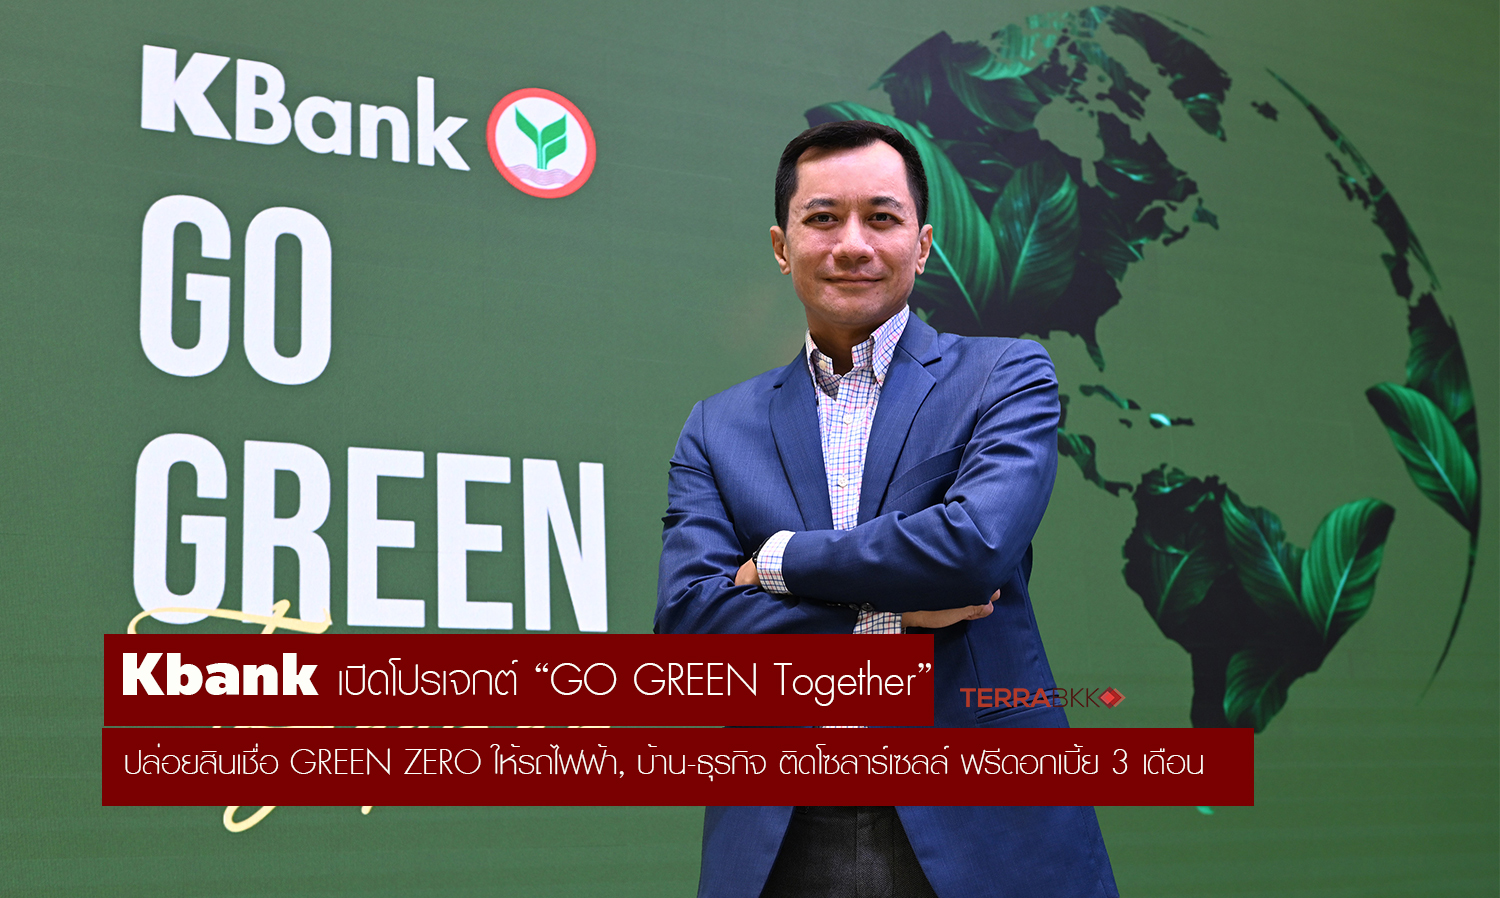 Kbank ปล่อยสินเชื่อ GREEN ZERO รถไฟฟ้า, บ้าน-ธุรกิจ ติดโซลาร์เซลล์ ฟรีดอกเบี้ย 3 เดือน